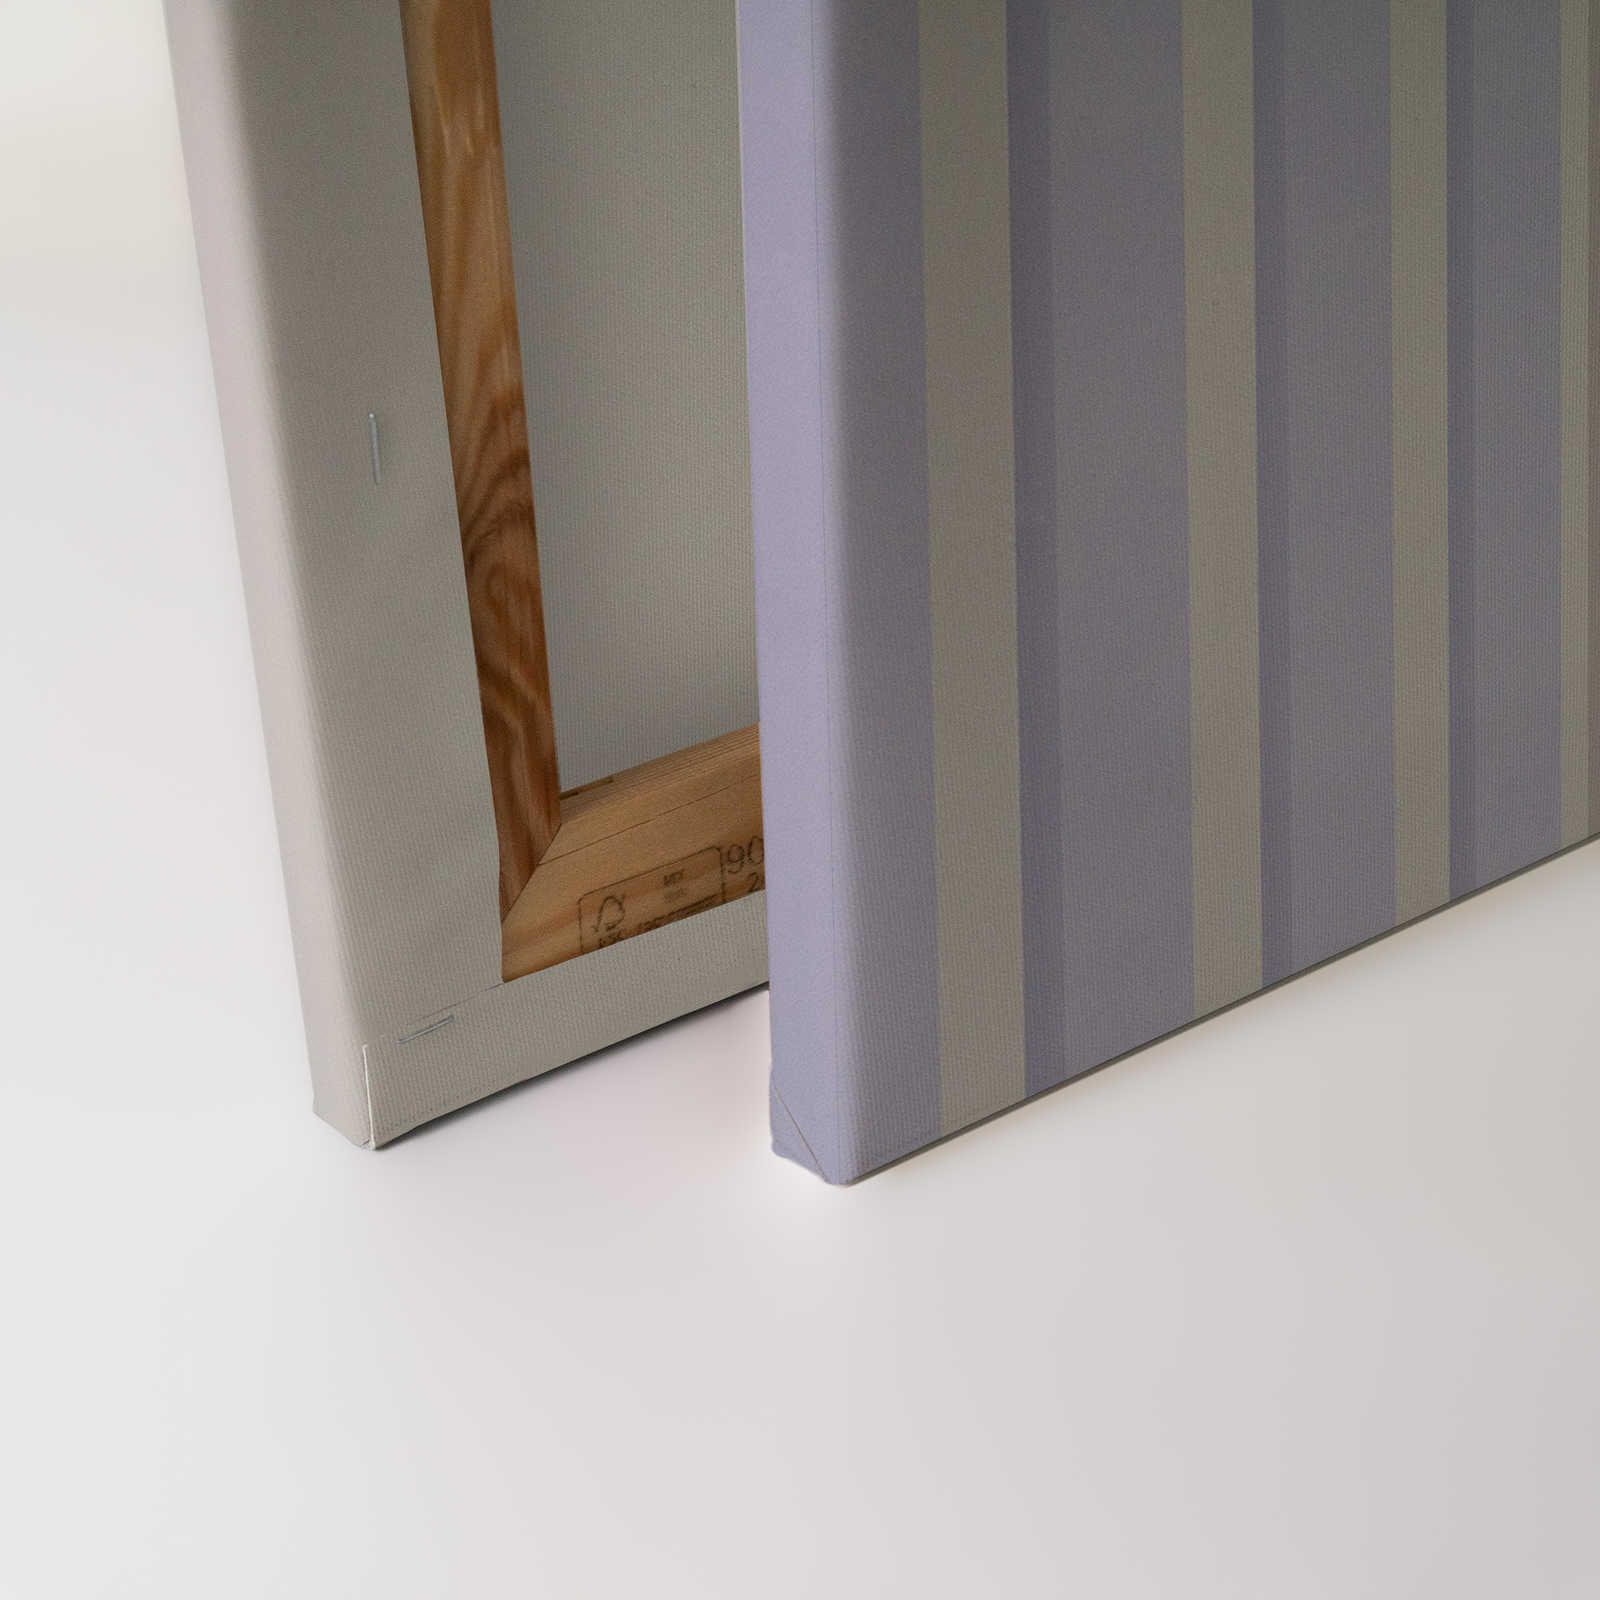             Illusion Room 1 - Quadro su tela con disegno a righe 3D in viola e grigio - 0,90 m x 0,60 m
        